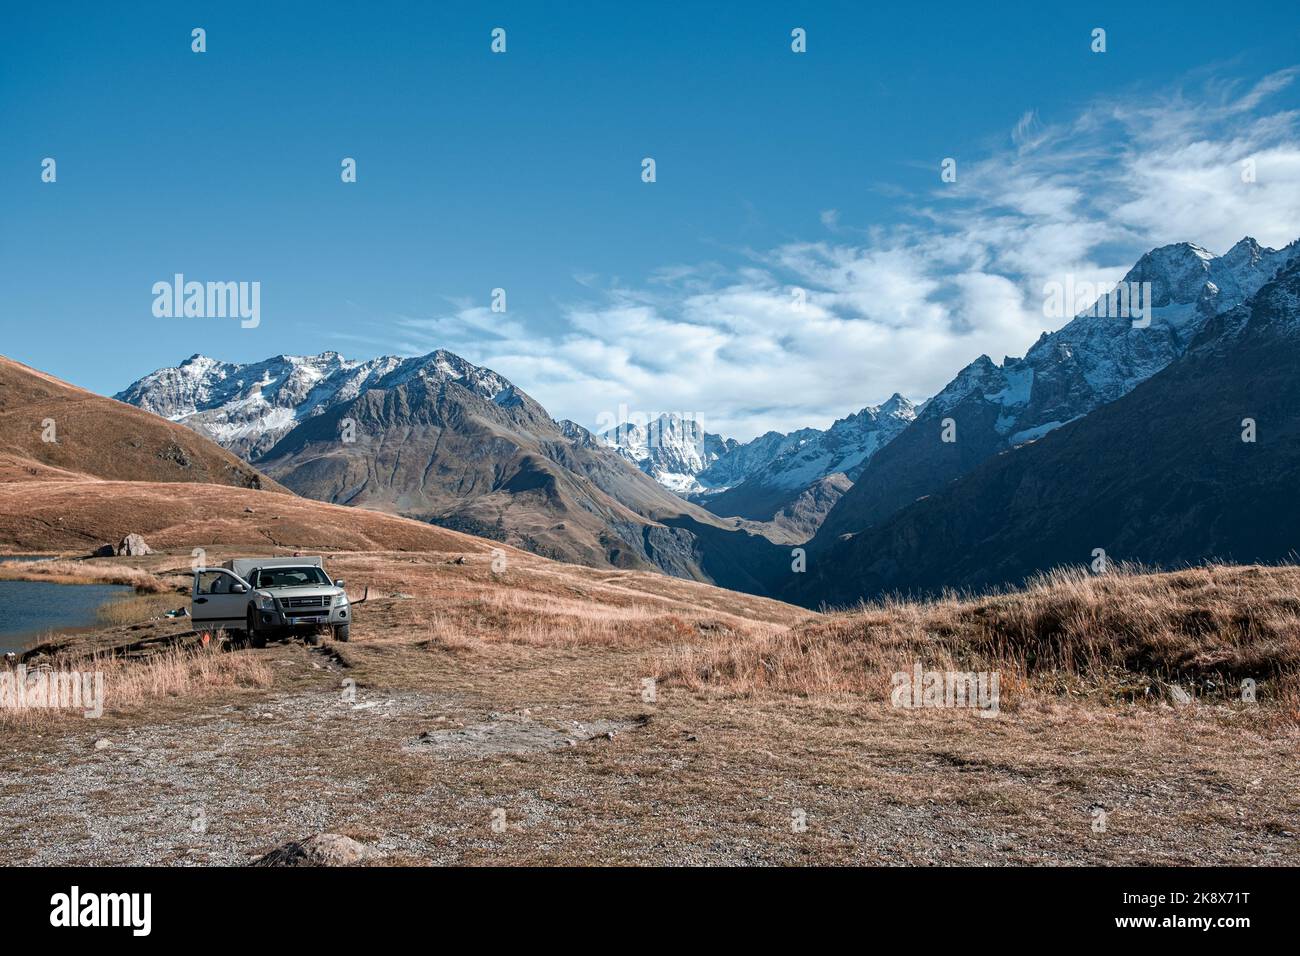 Les Alpes culminent début octobre. neige au sommet de la montagne. Photo de paysage de montagne. Région alpine Banque D'Images